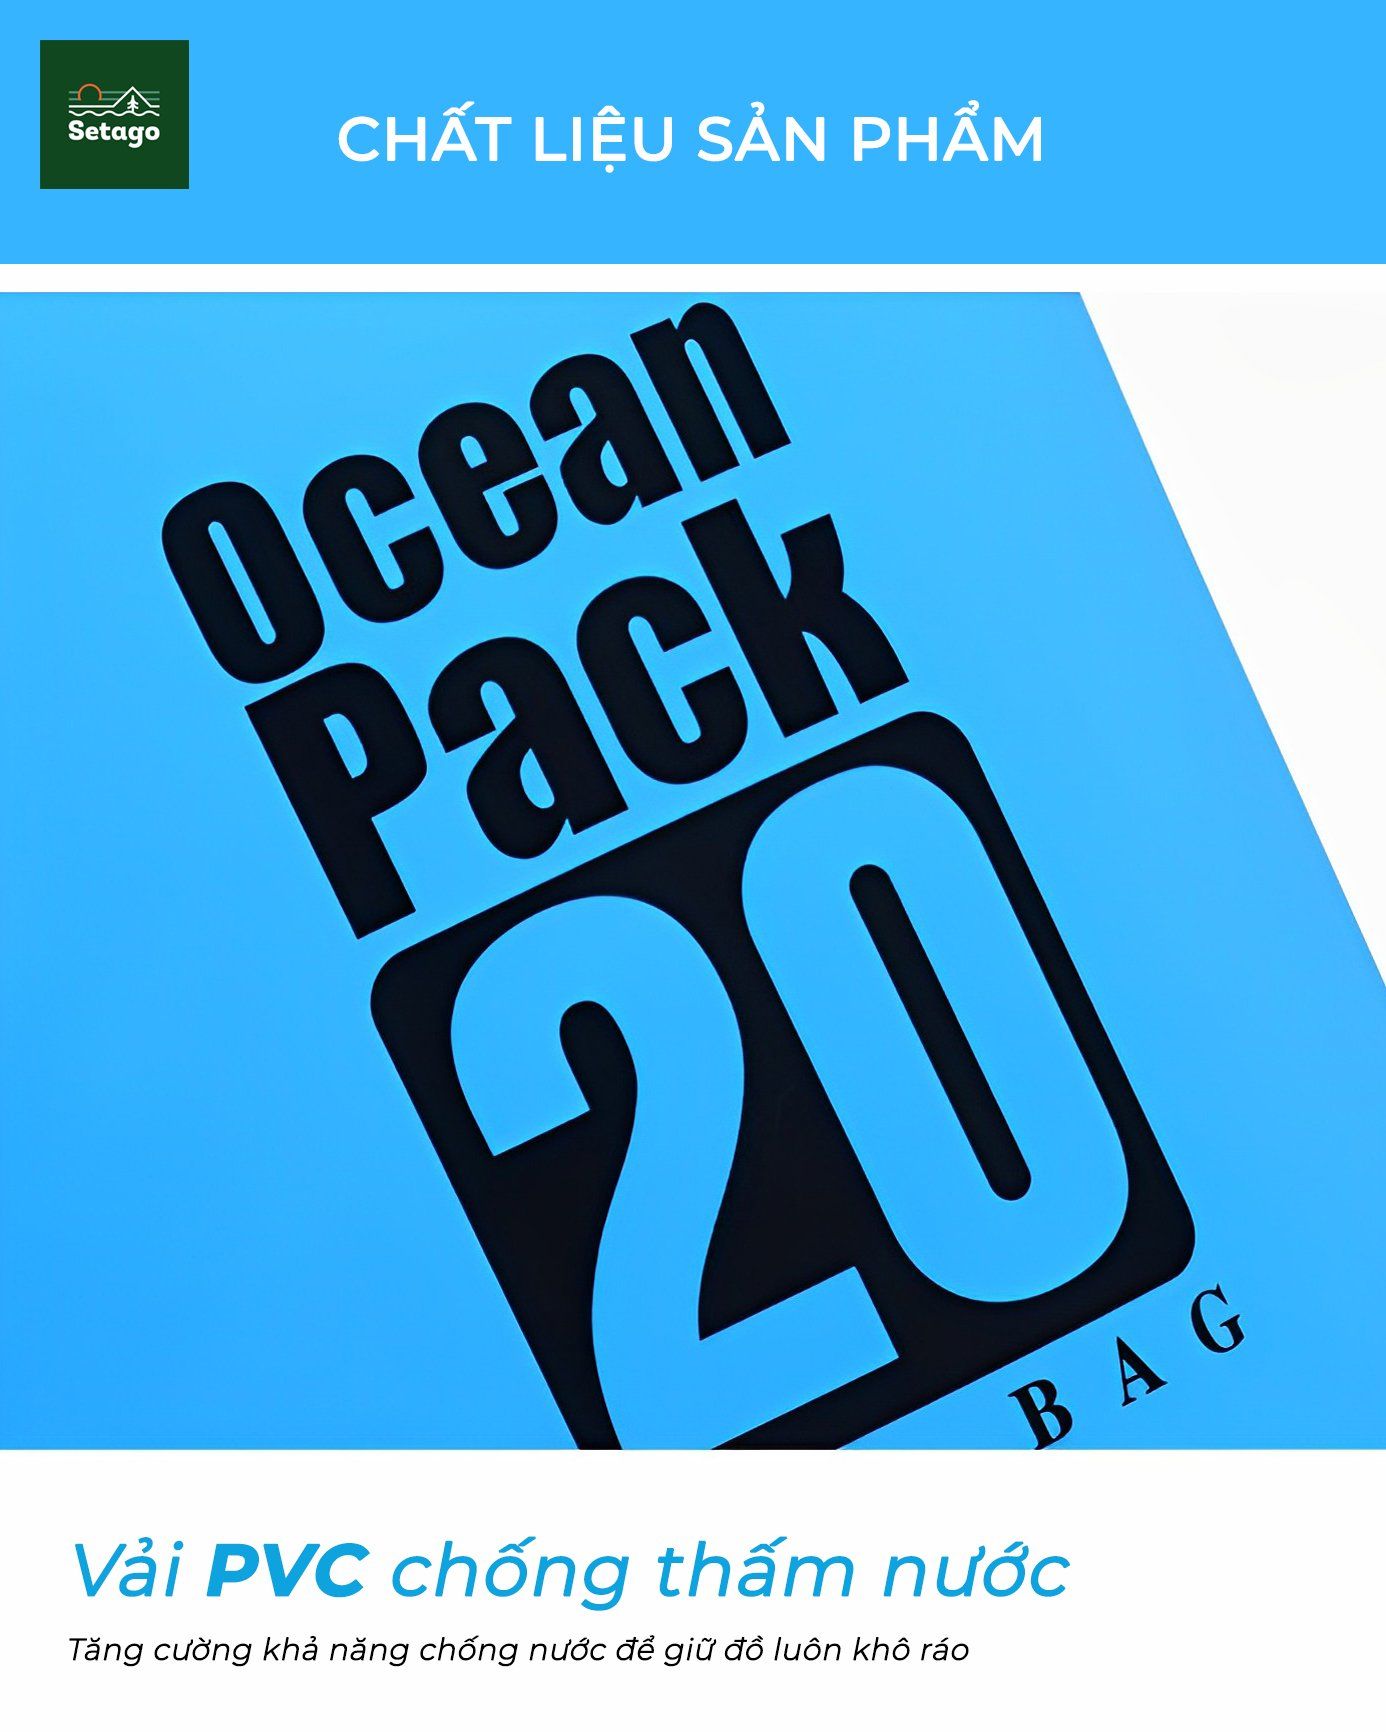  Balo chống nước Ocean Pack - Bảo vệ laptop, điện thoại, đồ điện tử không sợ ướt, ngấm nước khi đi mưa, đi biển 